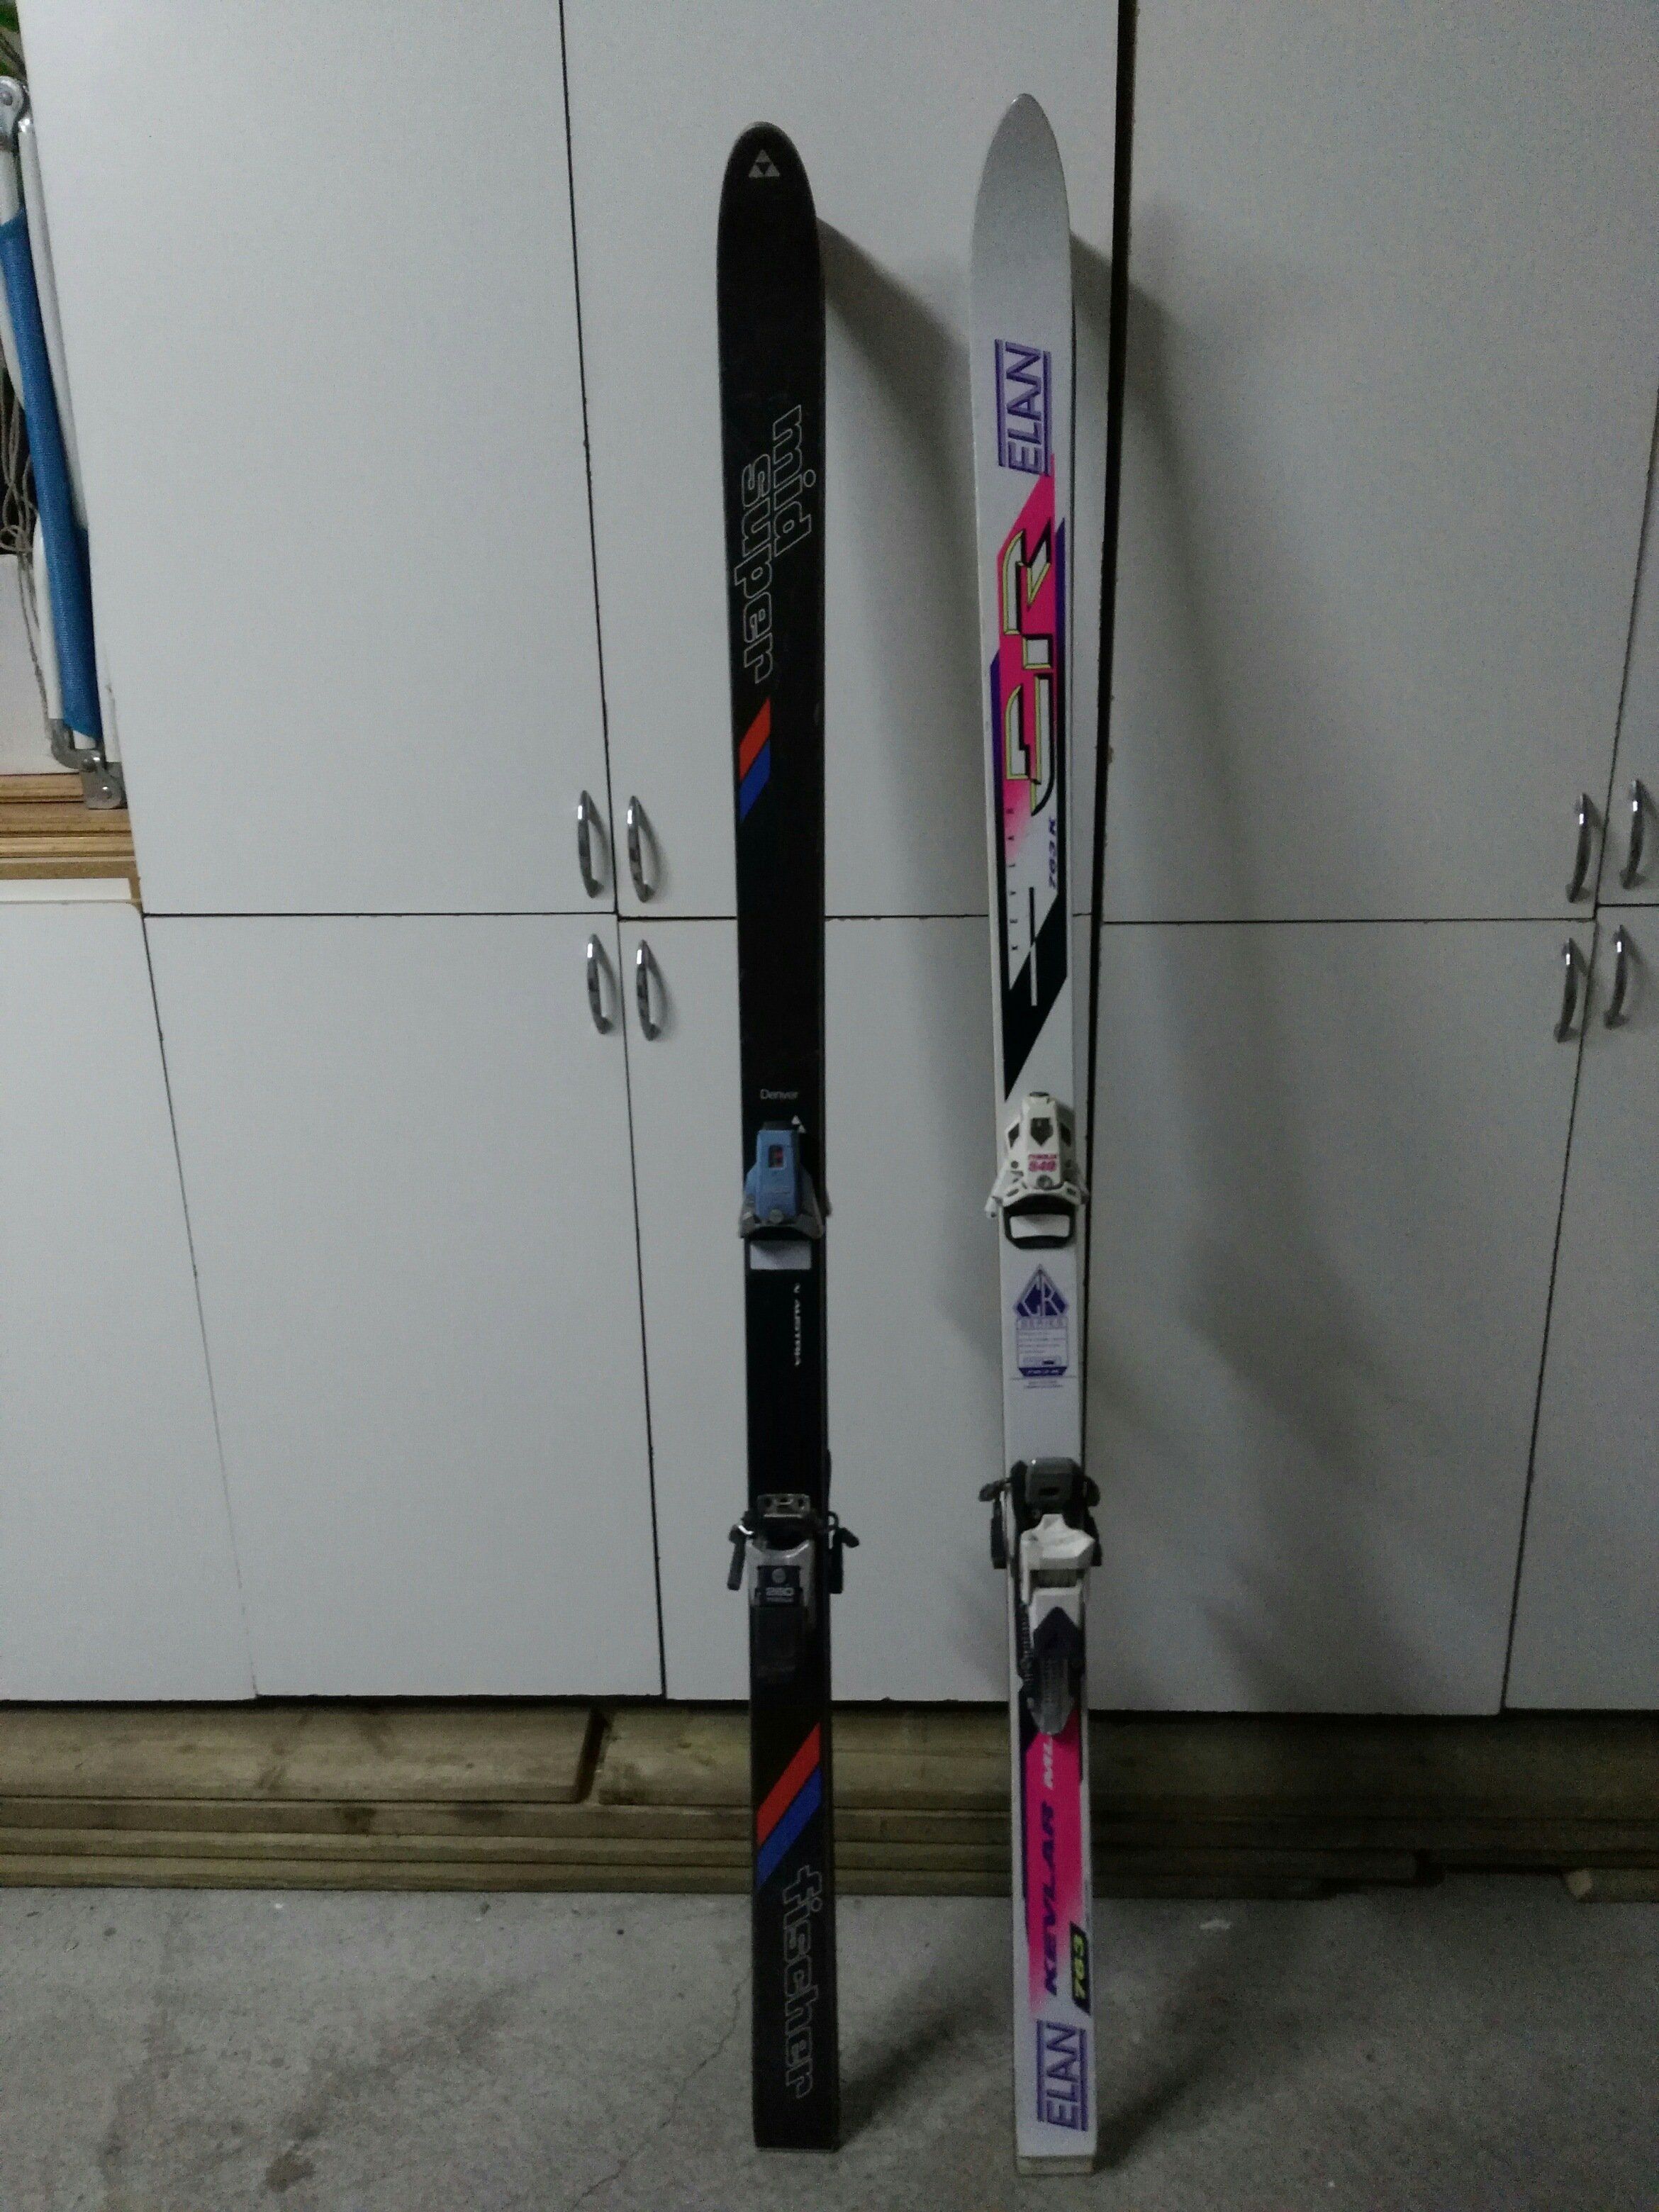 ski.jpg